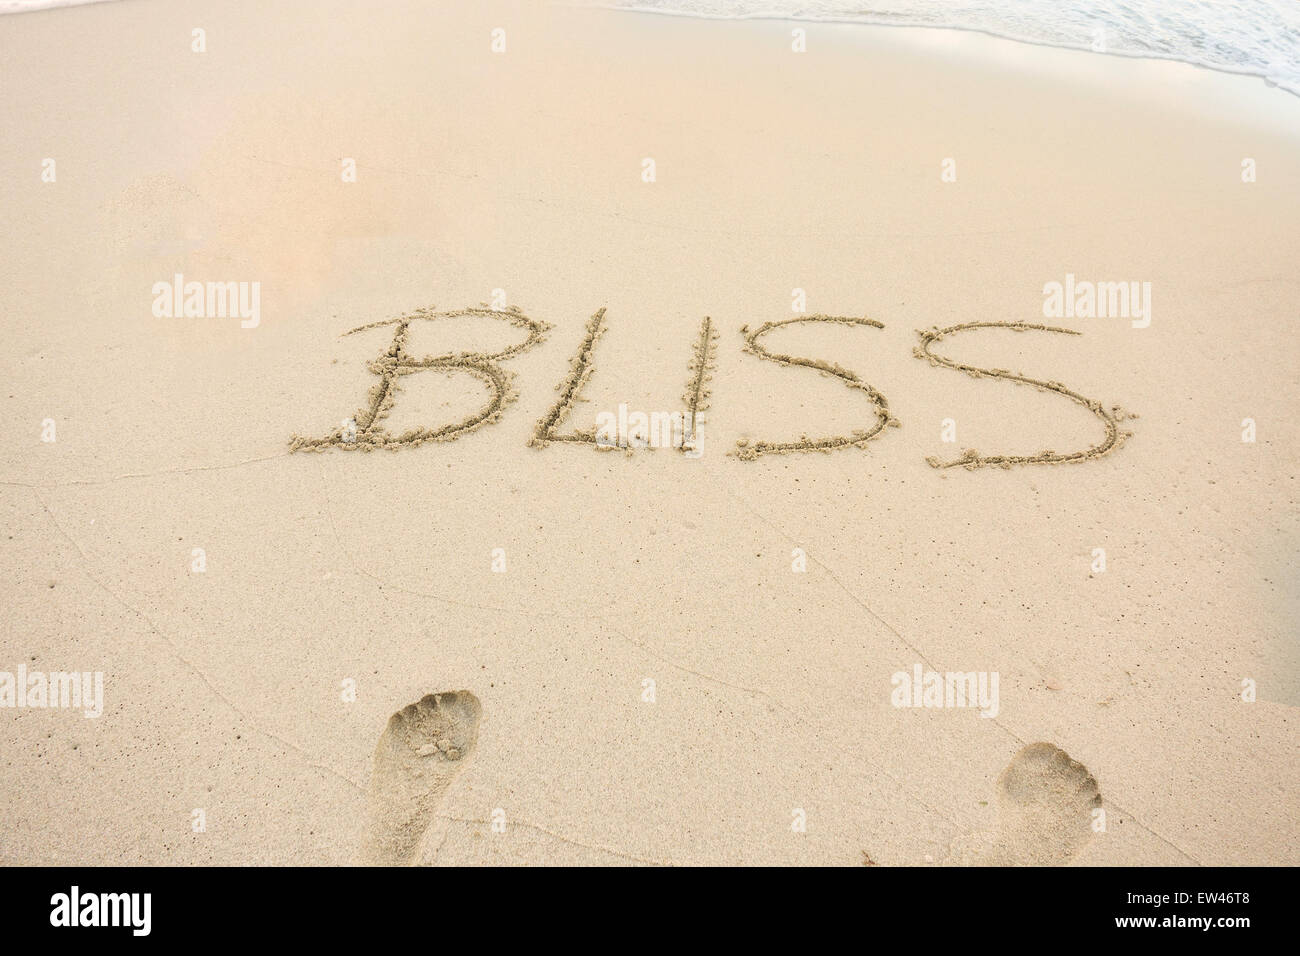 Un message, Bliss, écrit dans le sable sur la plage d'une île tropicale. Conceptuel. Banque D'Images